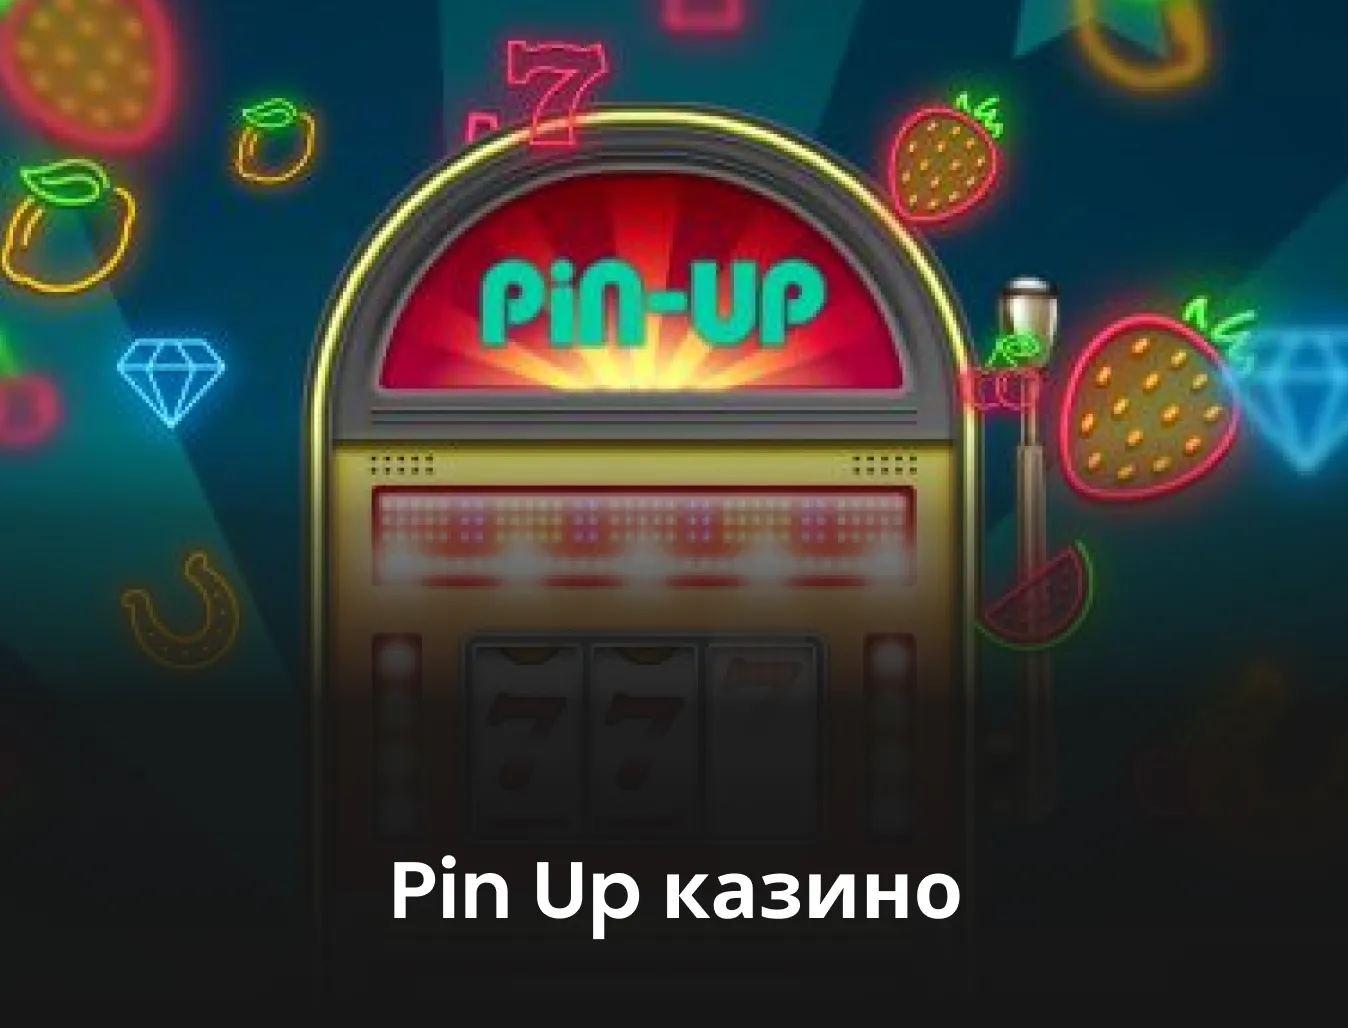 Пинап казино - Готовы ли вы к хорошему?